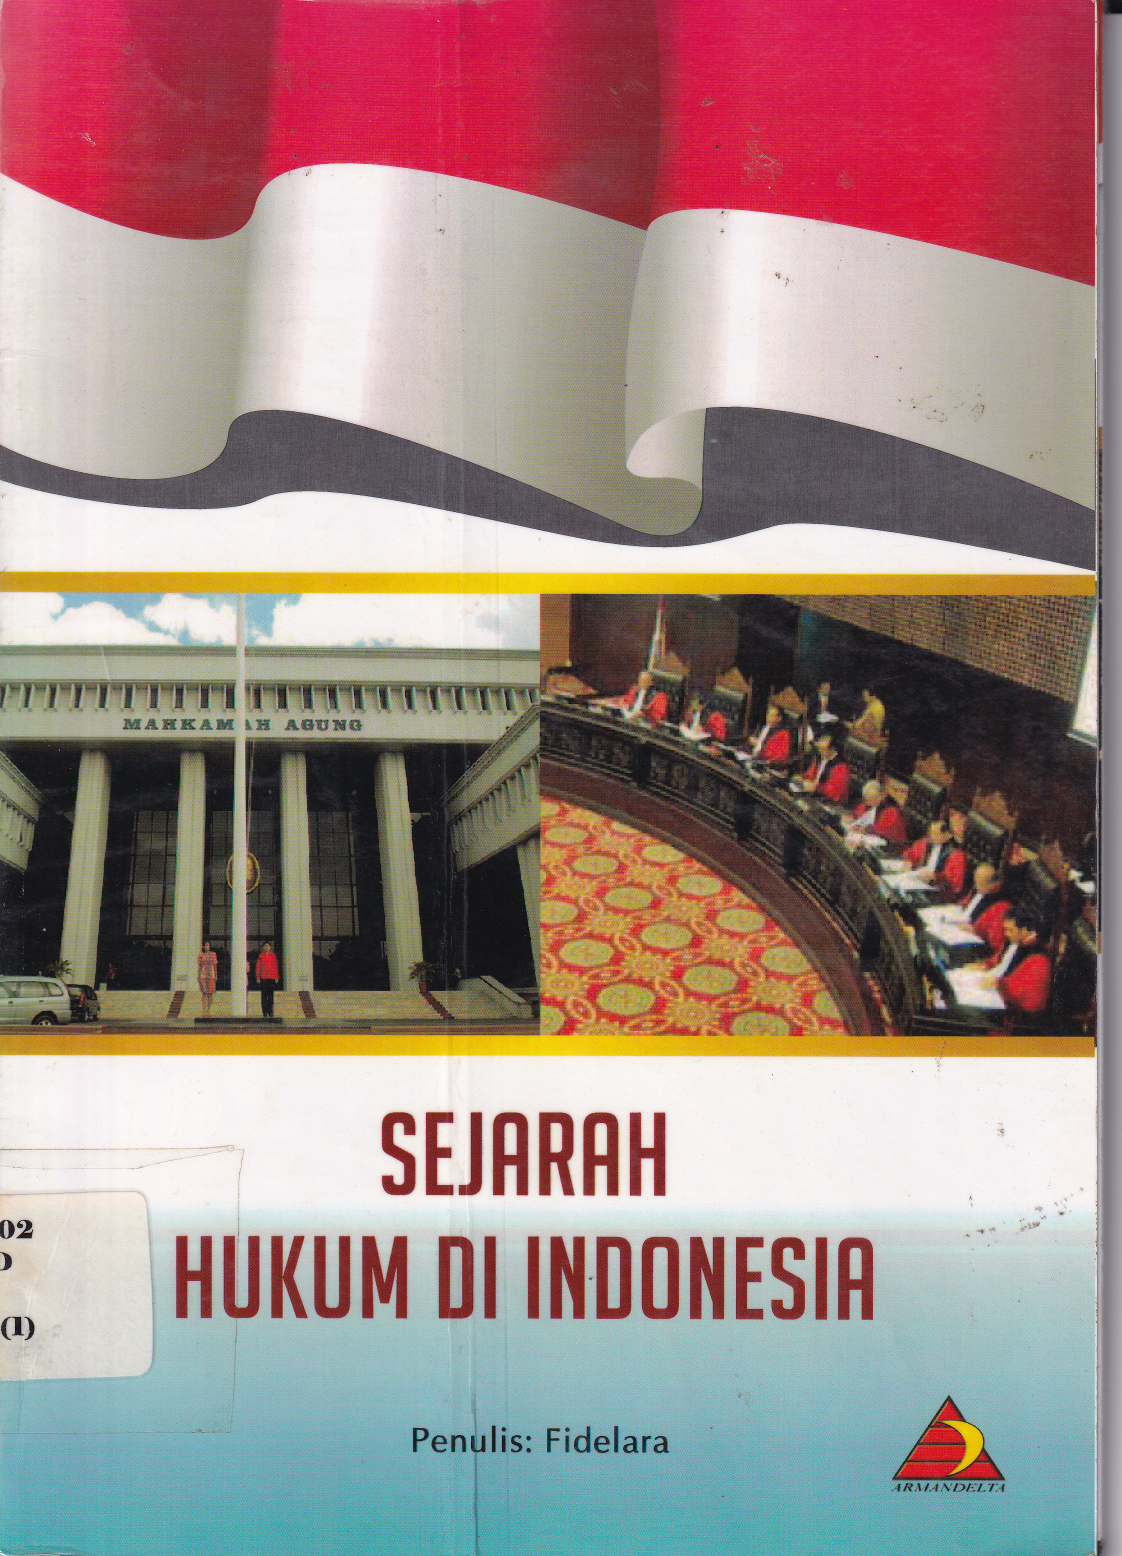 Sejarah Hukum di Indonesia